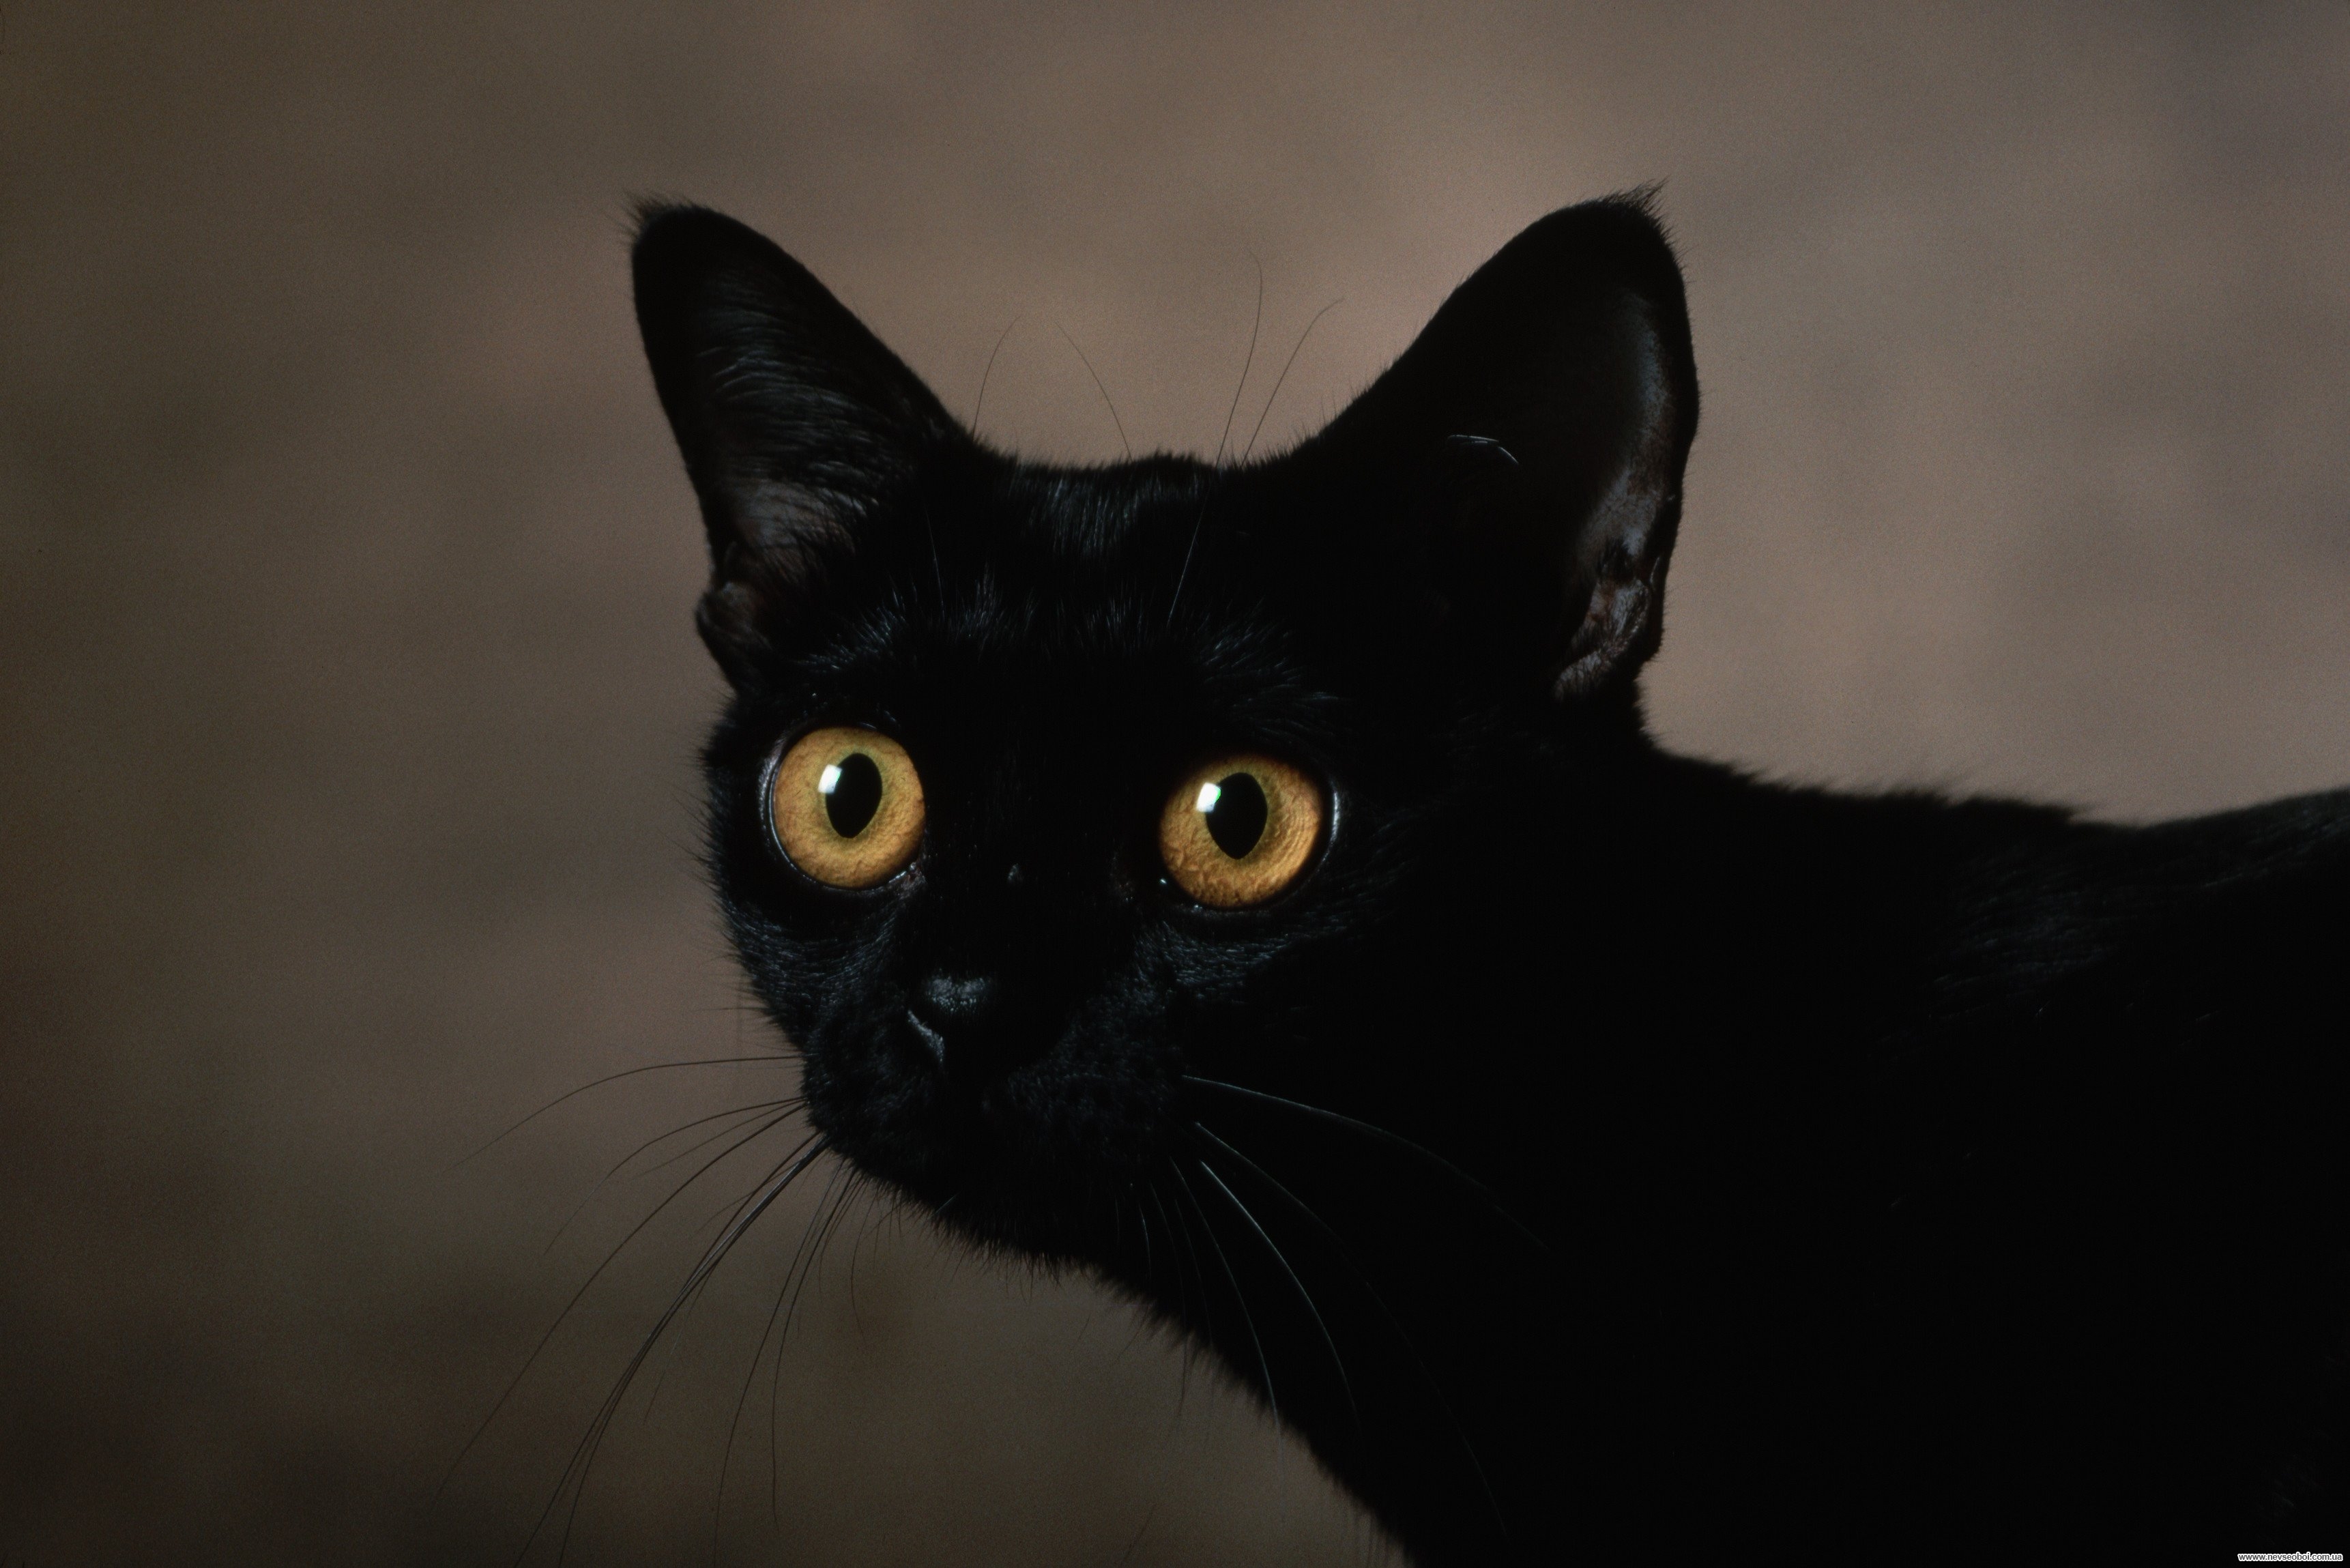 Черные кошки 10. Бомбейская кошка с зелеными глазами. Охос азулес черный. Бомбейская черная кошка. Порода кошек Охос азулес.